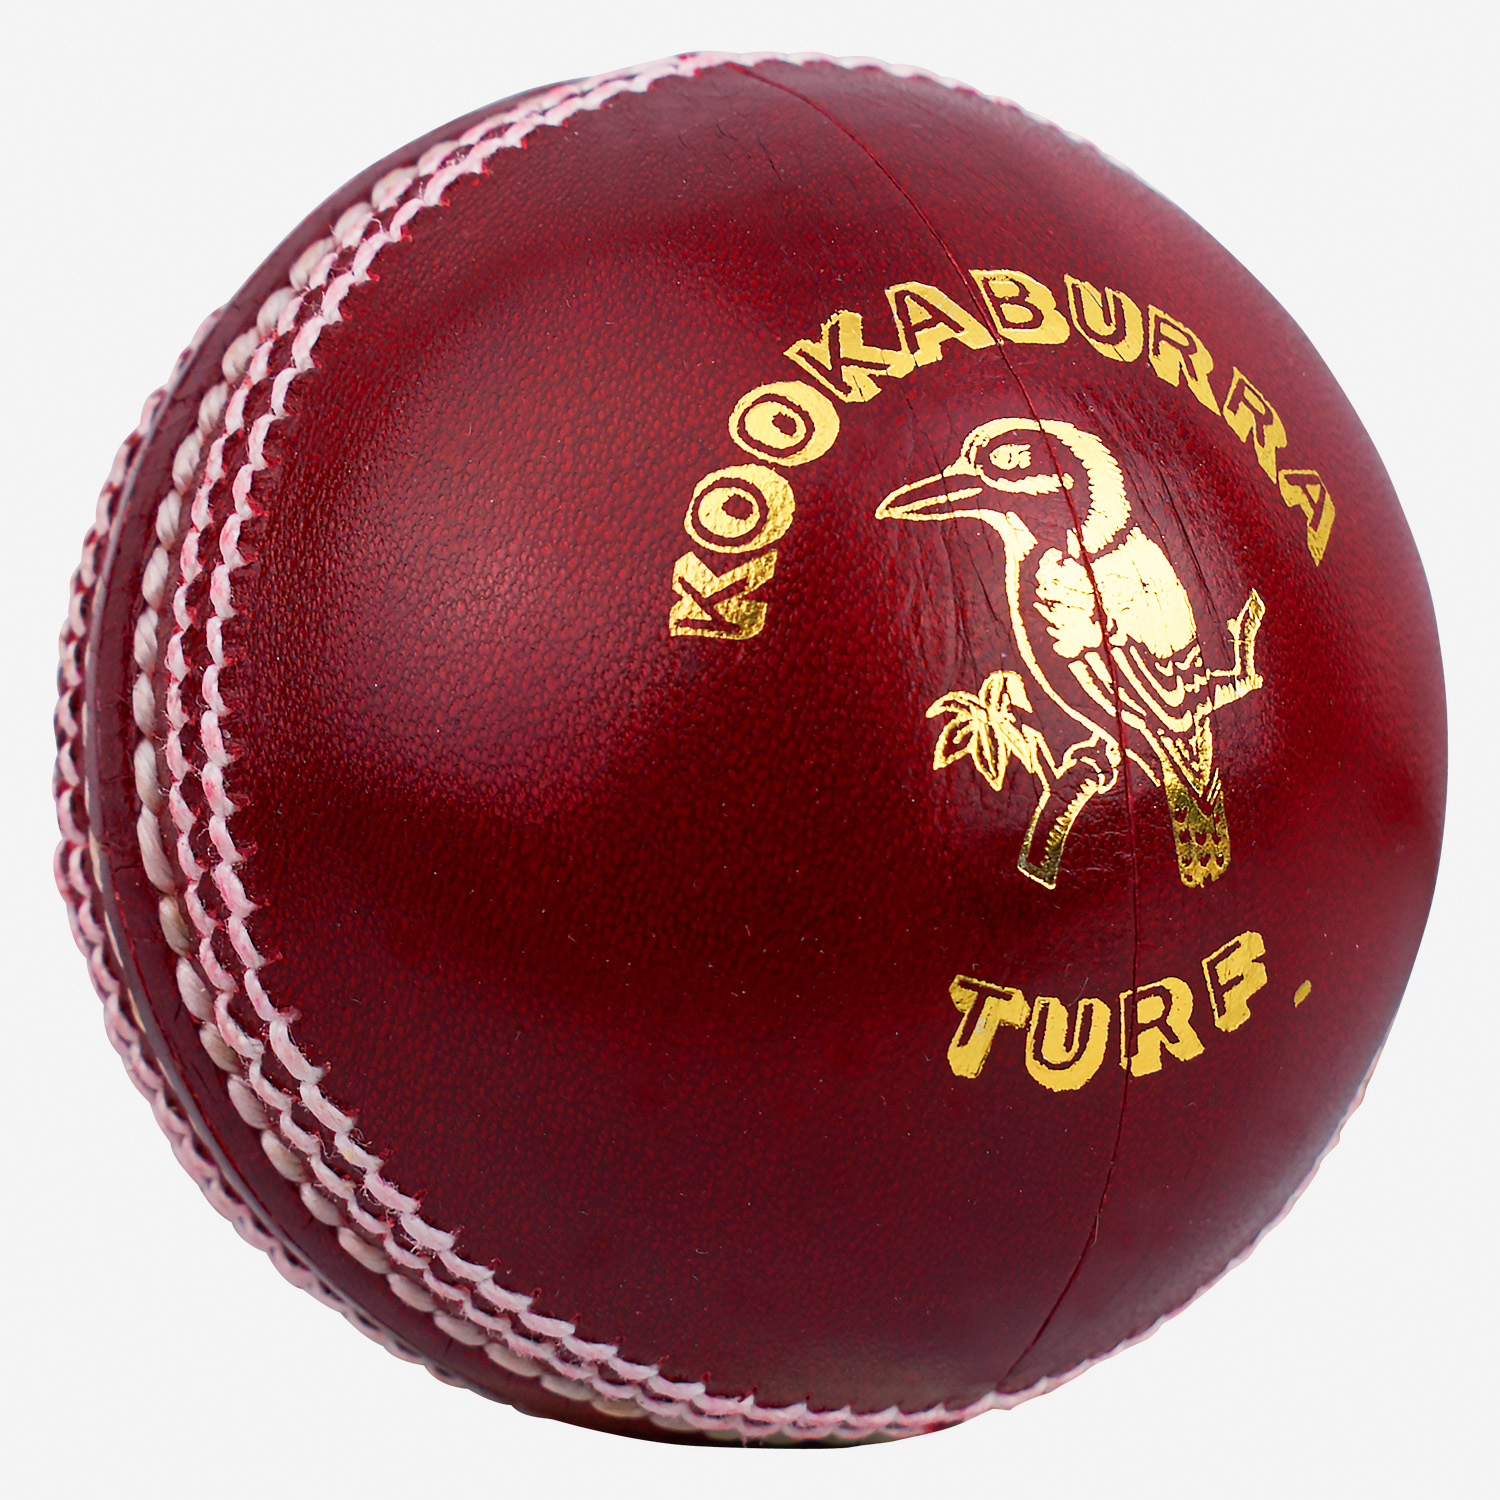 Kookaburra Turf Red Cricket Ball